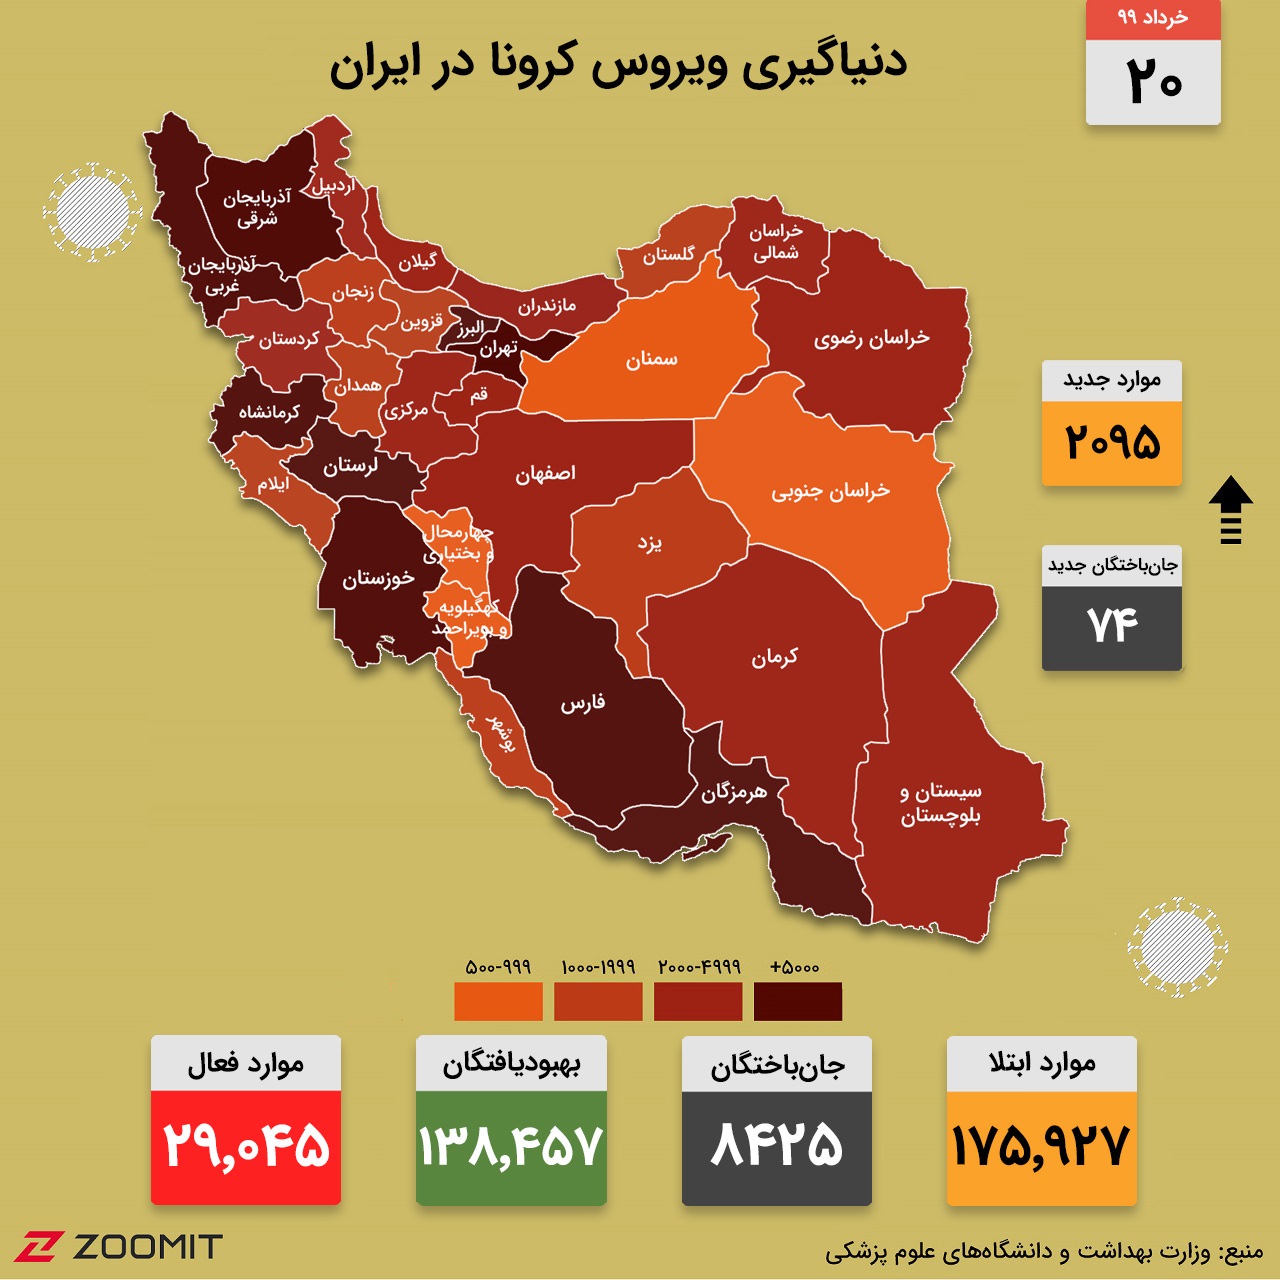 نقشه کرونا در ایران (۲۰ خرداد ۹۹)